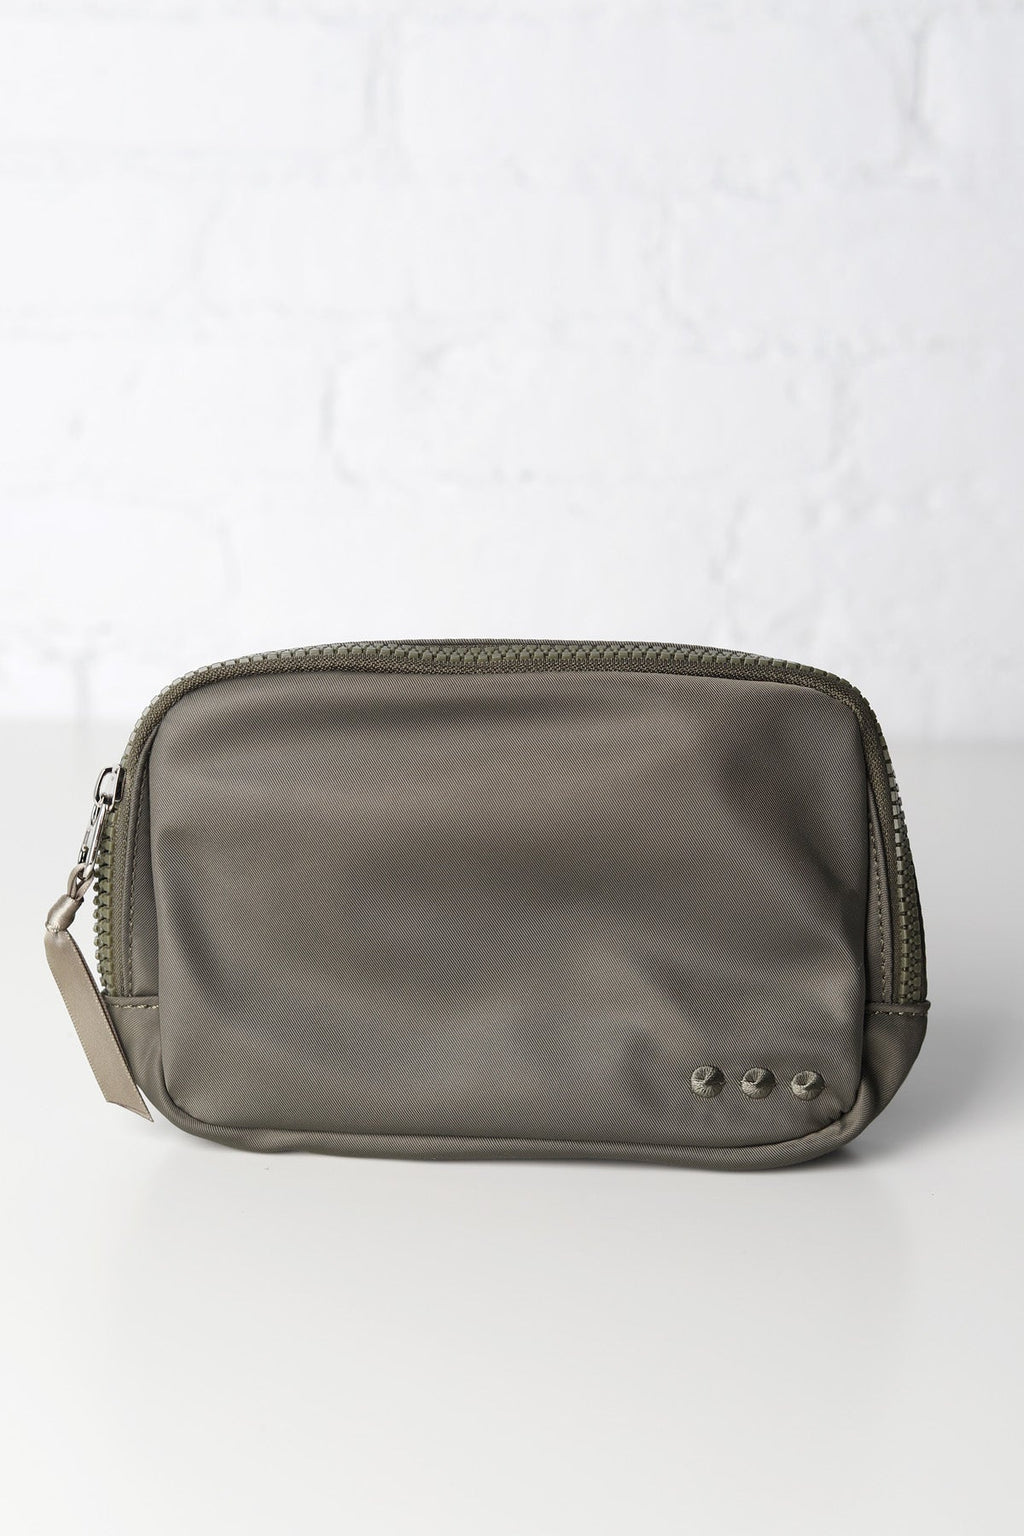 Nadya Olive Nylon Bum Bag